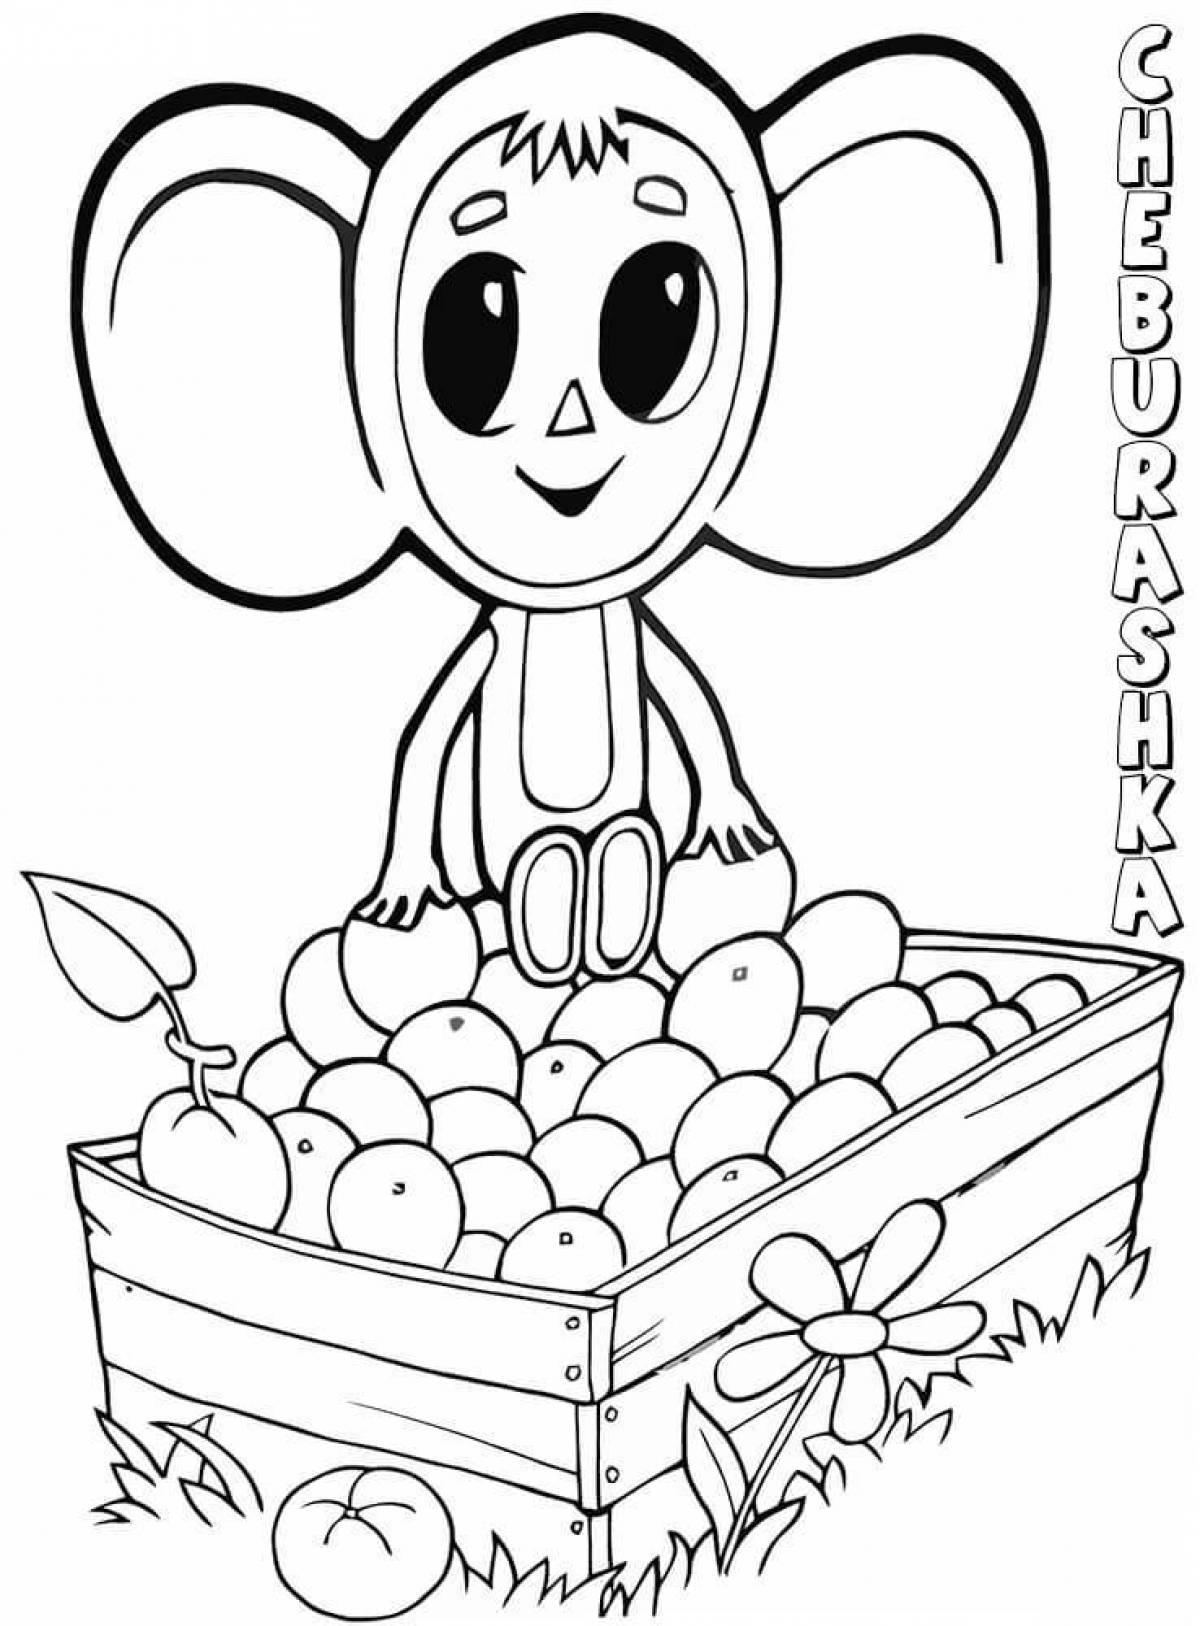 Cheburashka for kids #8